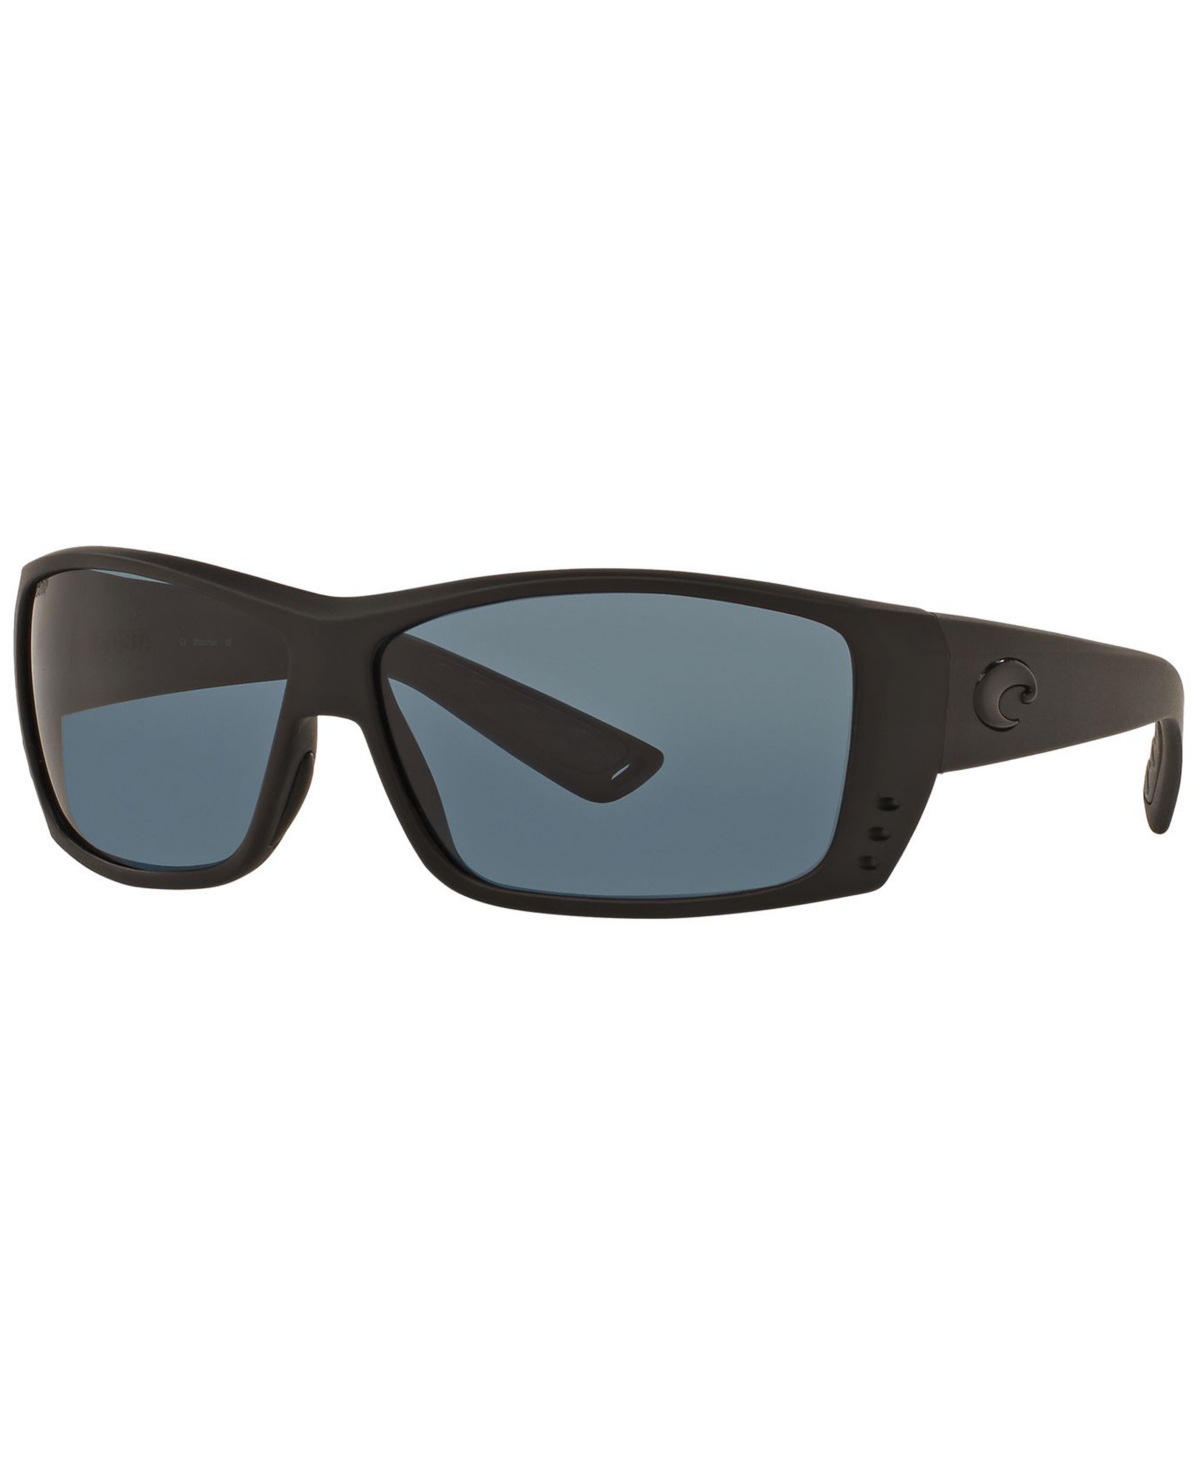 Polarized Sunglasses, Cat Cay Polarized 60P - BLACK/ GREY